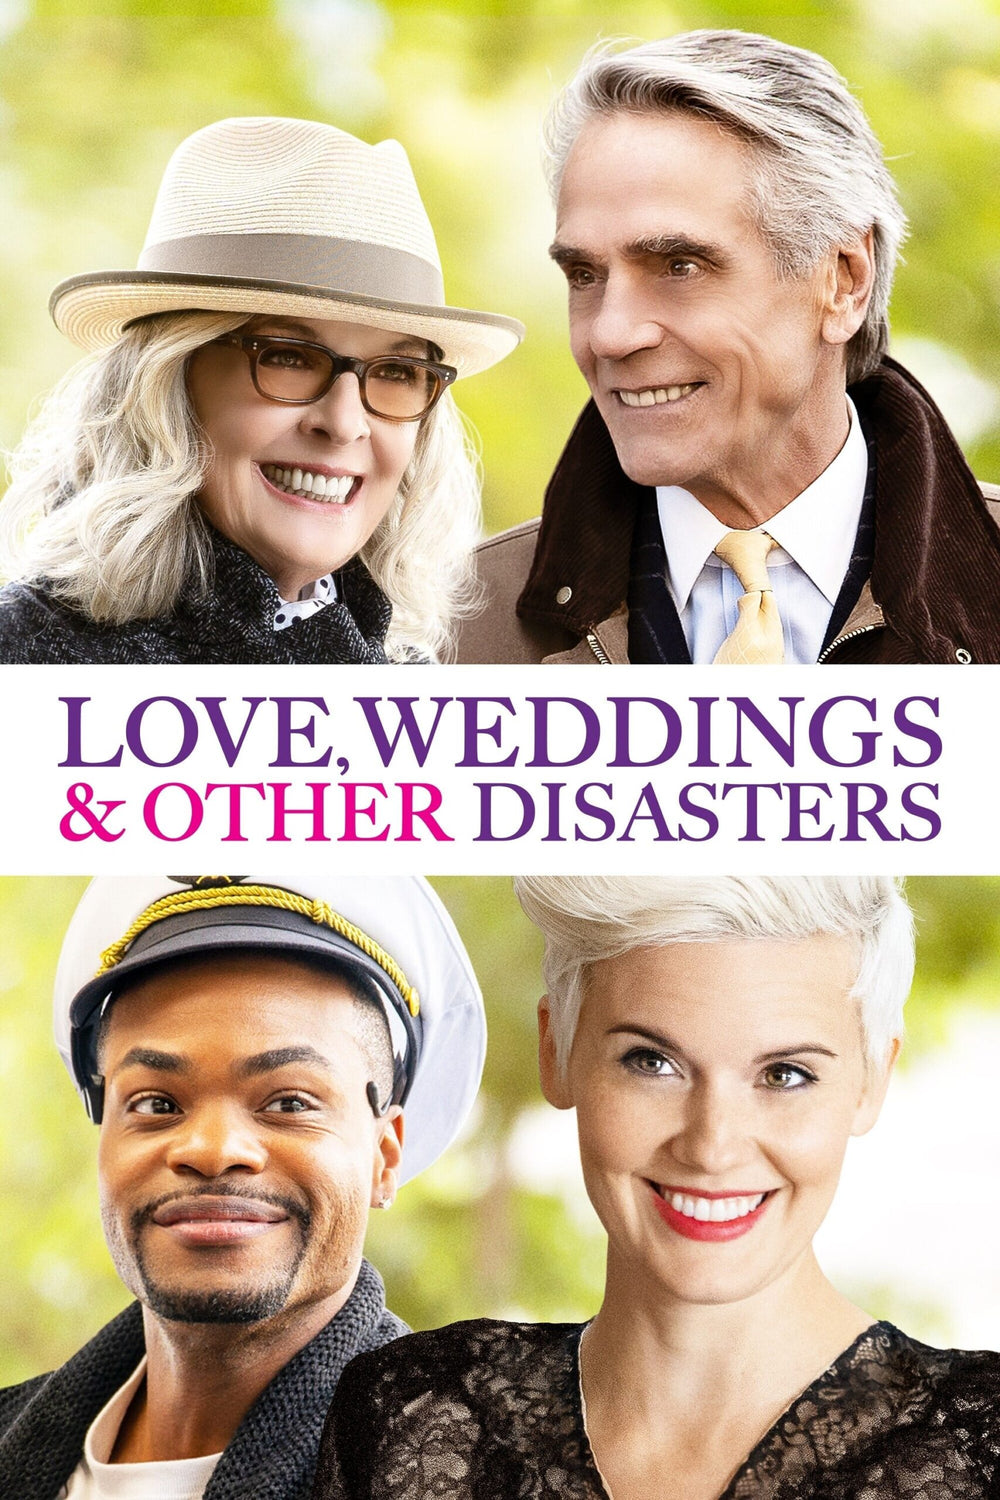 LOVE, WEDDINGS & OTHER DISASTERS HD vudu via movieredeem.com